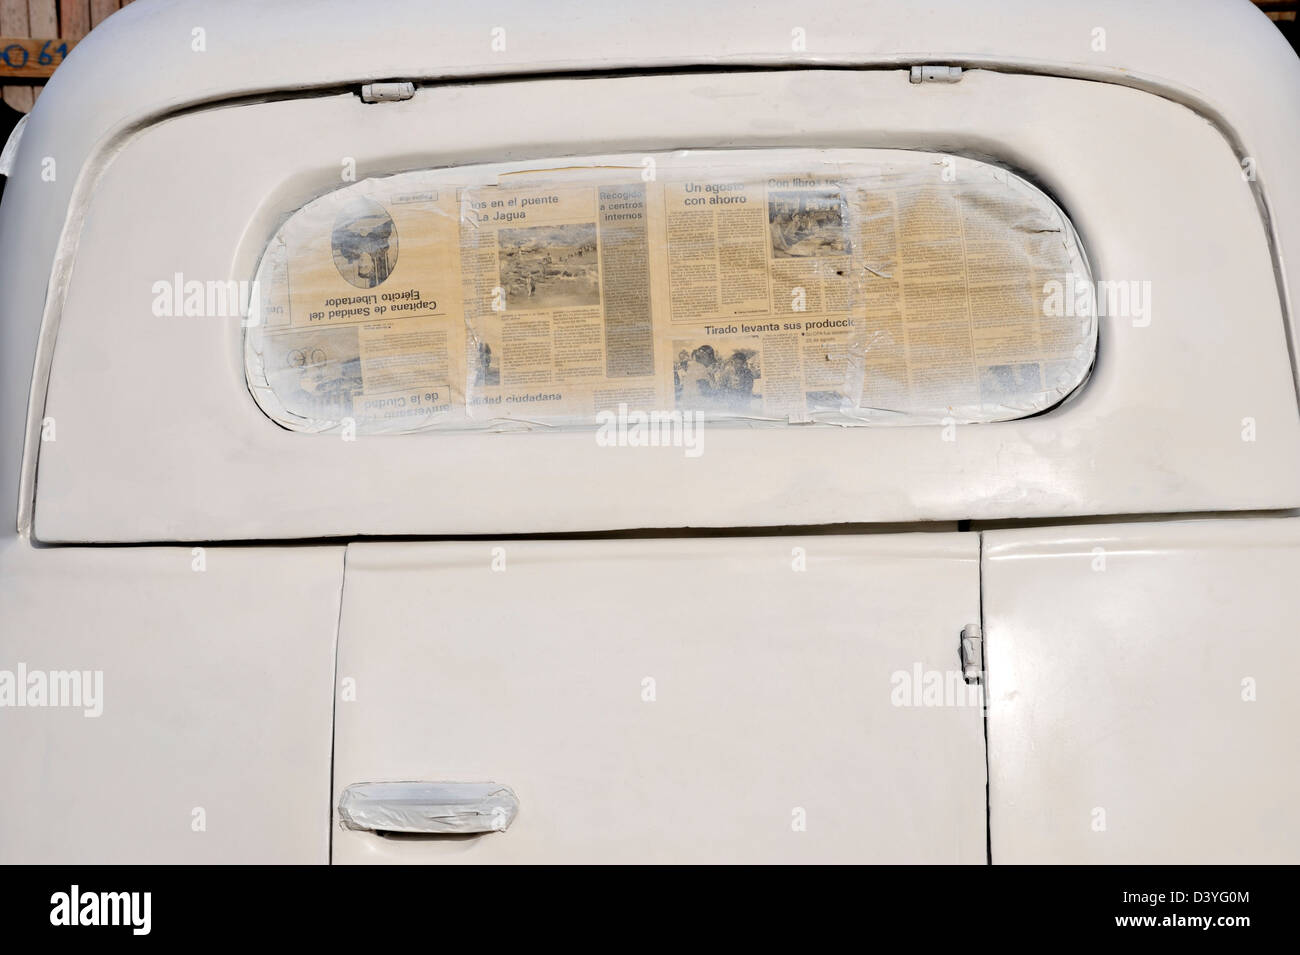 Vieille voiture avec une fenêtre couverte d'un journal pour le protéger tout en peinture, Vinales, province de Pinar del Rio, Cuba Banque D'Images